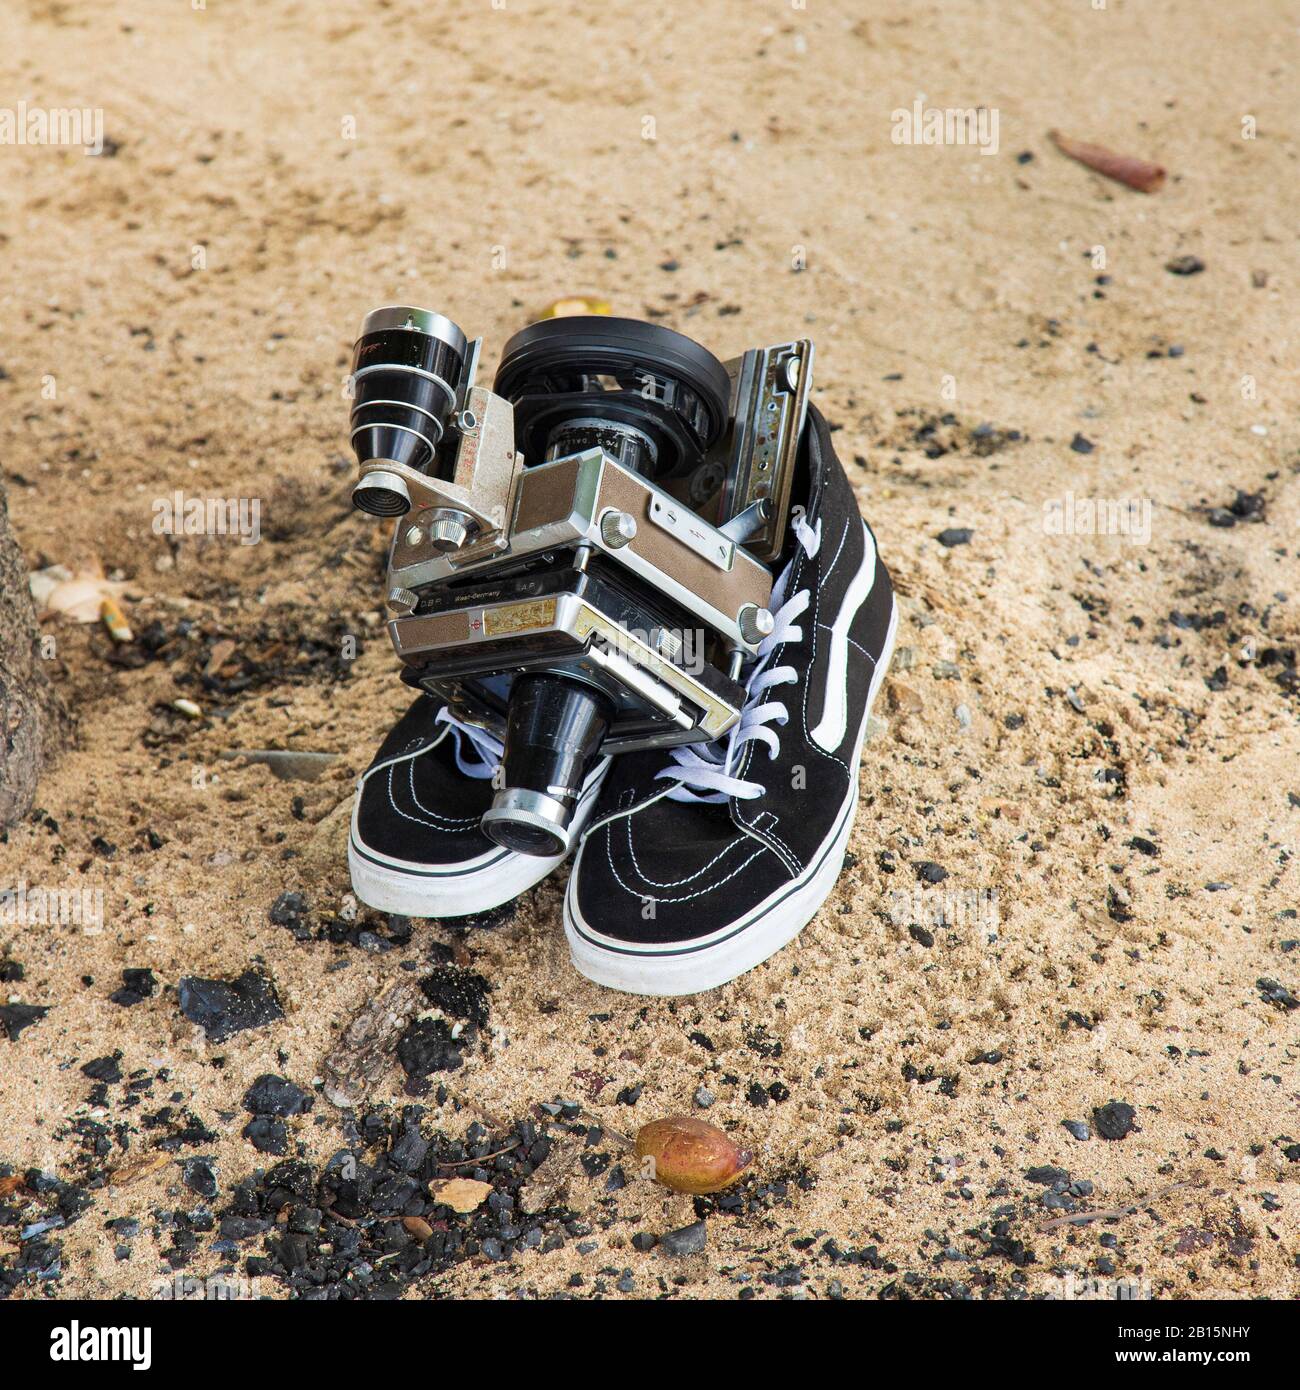 Videocamera Linhof Universal Sucher Technika con zoom e film un paio di moderne sneaker alte su una spiaggia di sabbia Foto Stock